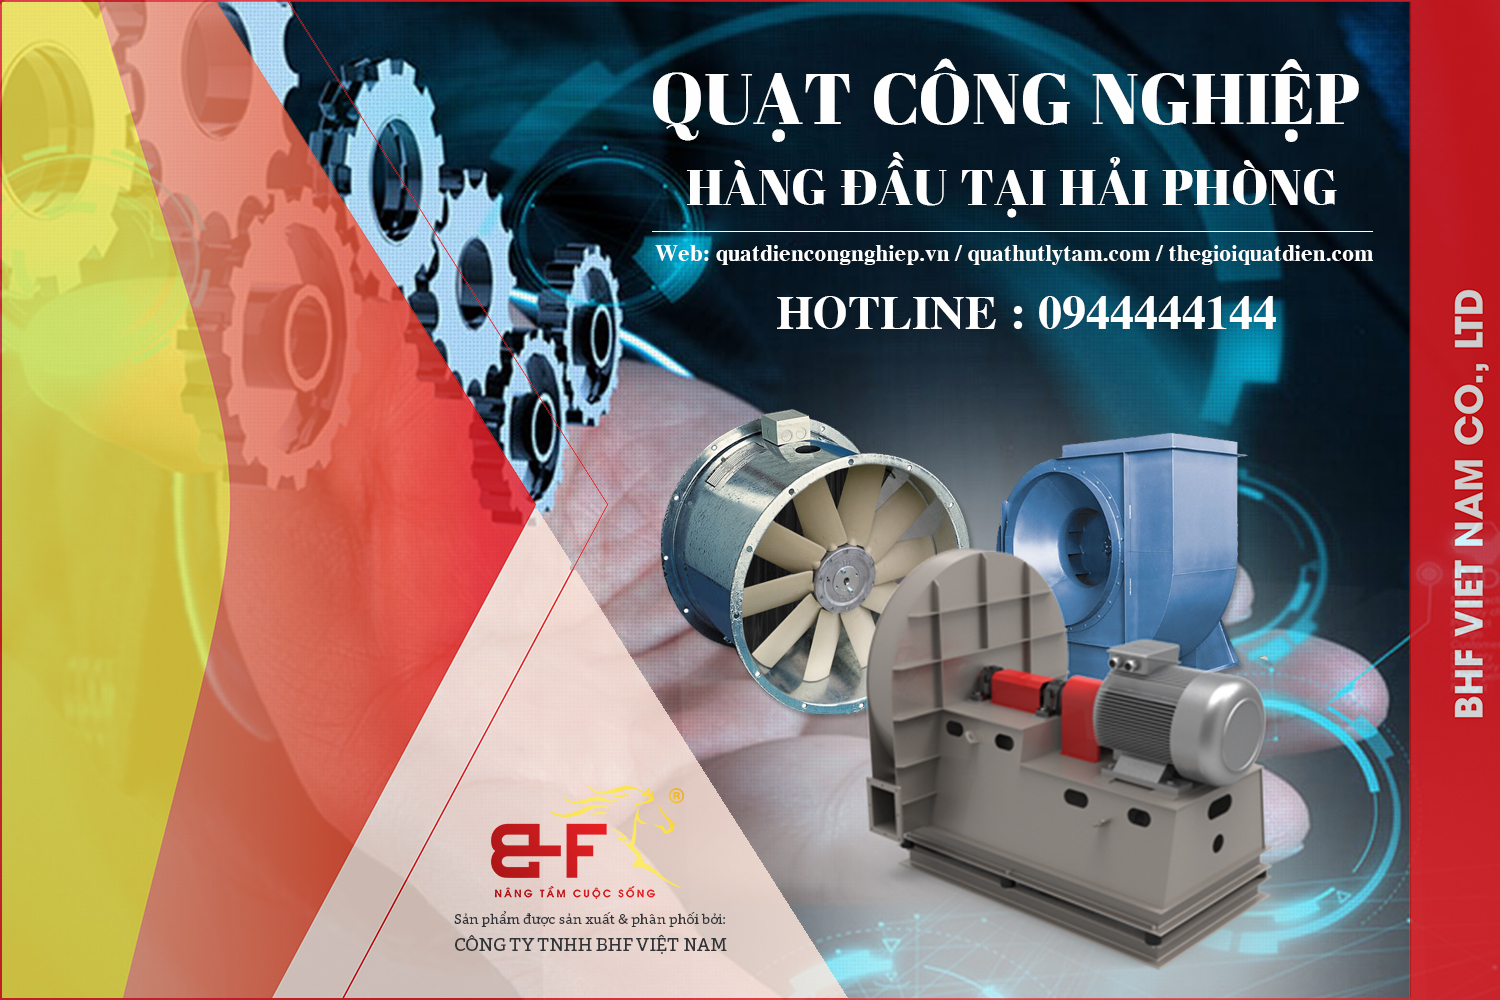 Công ty BHF Việt Nam đơn vị cũng cấp quạt công nghiệp với giá thành rẻ, cạnh tranh nhất khu vực Hải Phòng